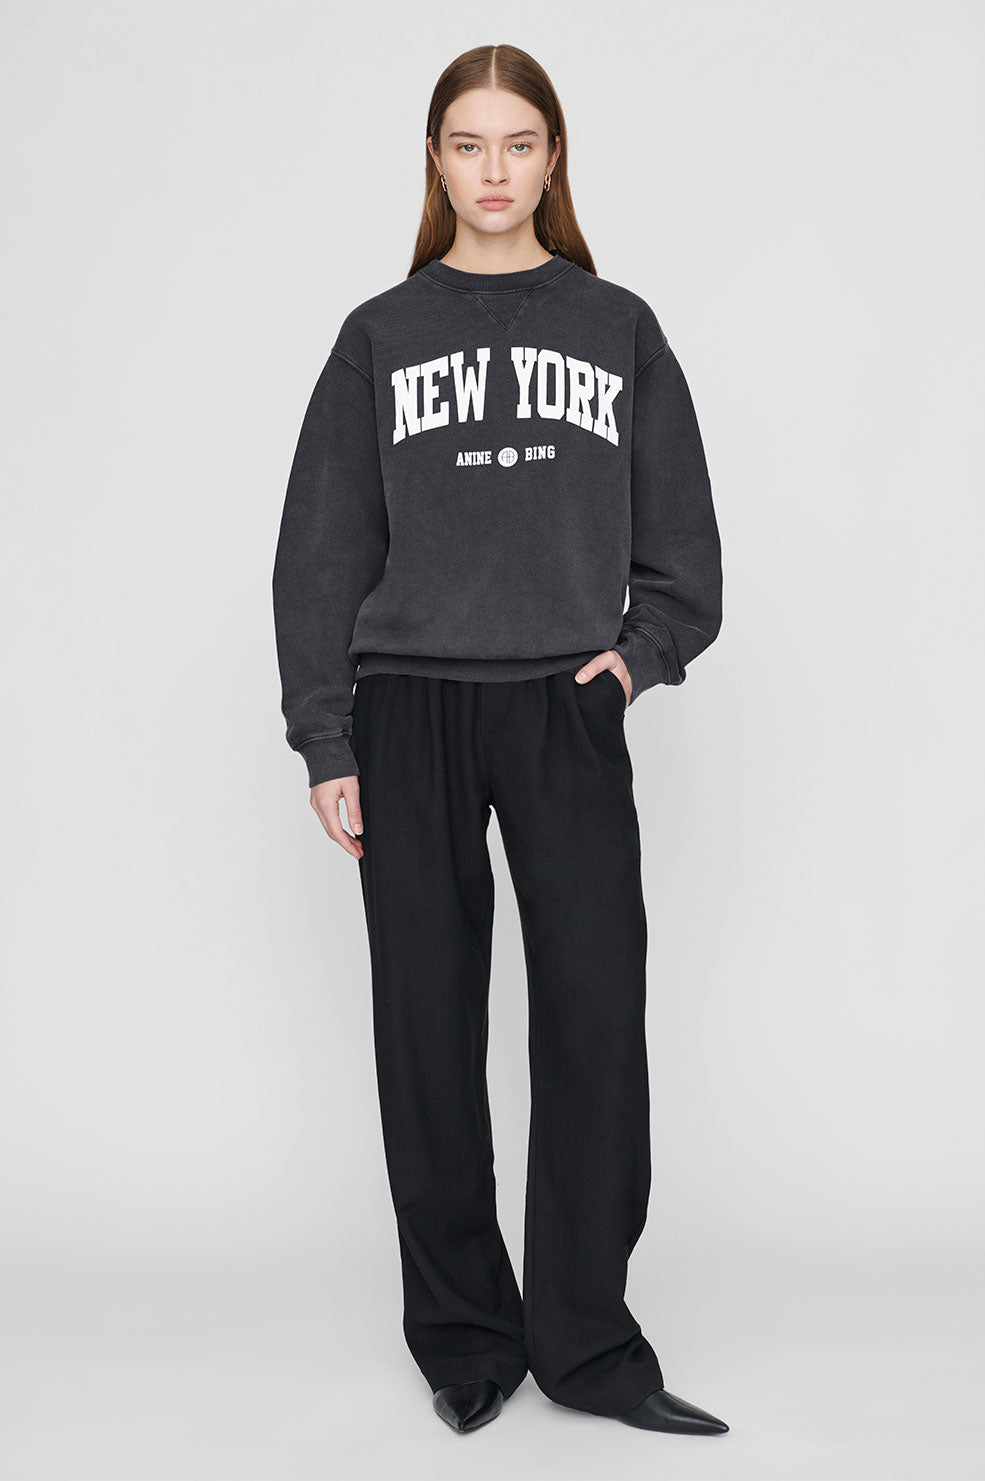 ANINE BING Ramona Sweatshirt University New York - Washed Black - On Model Front